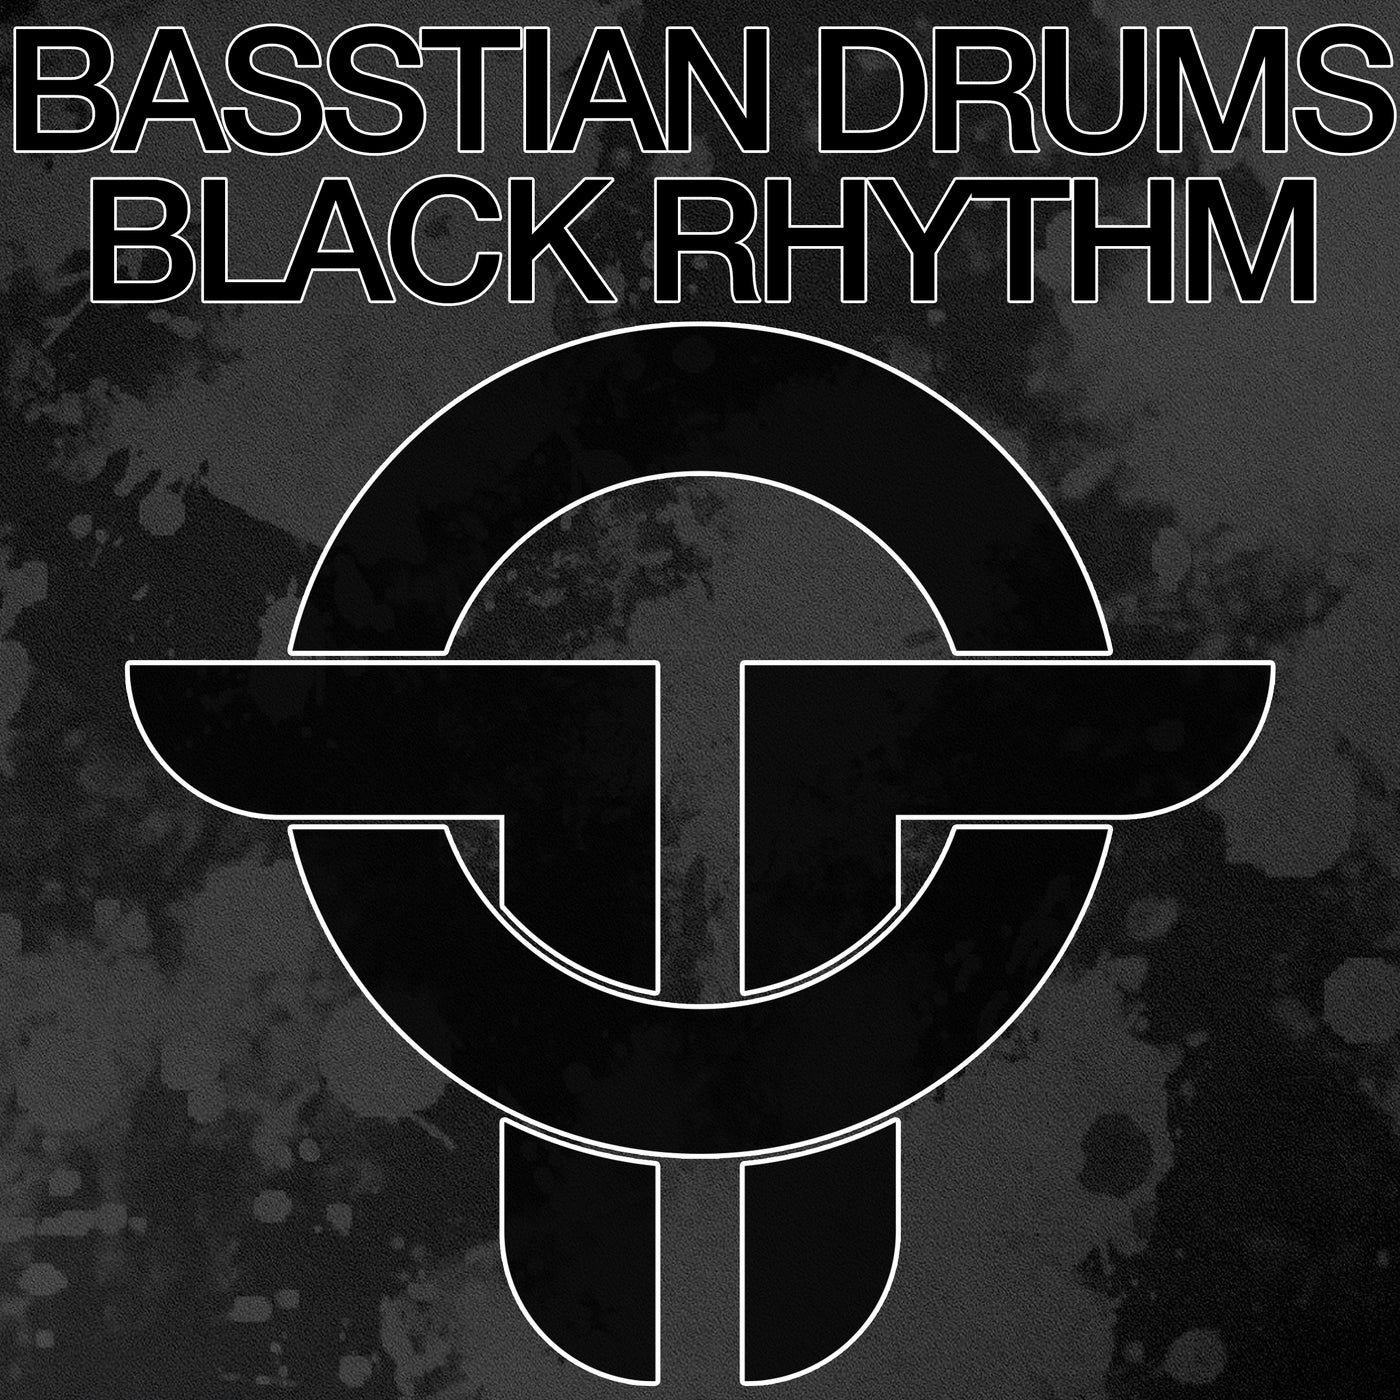 Black Rhythm